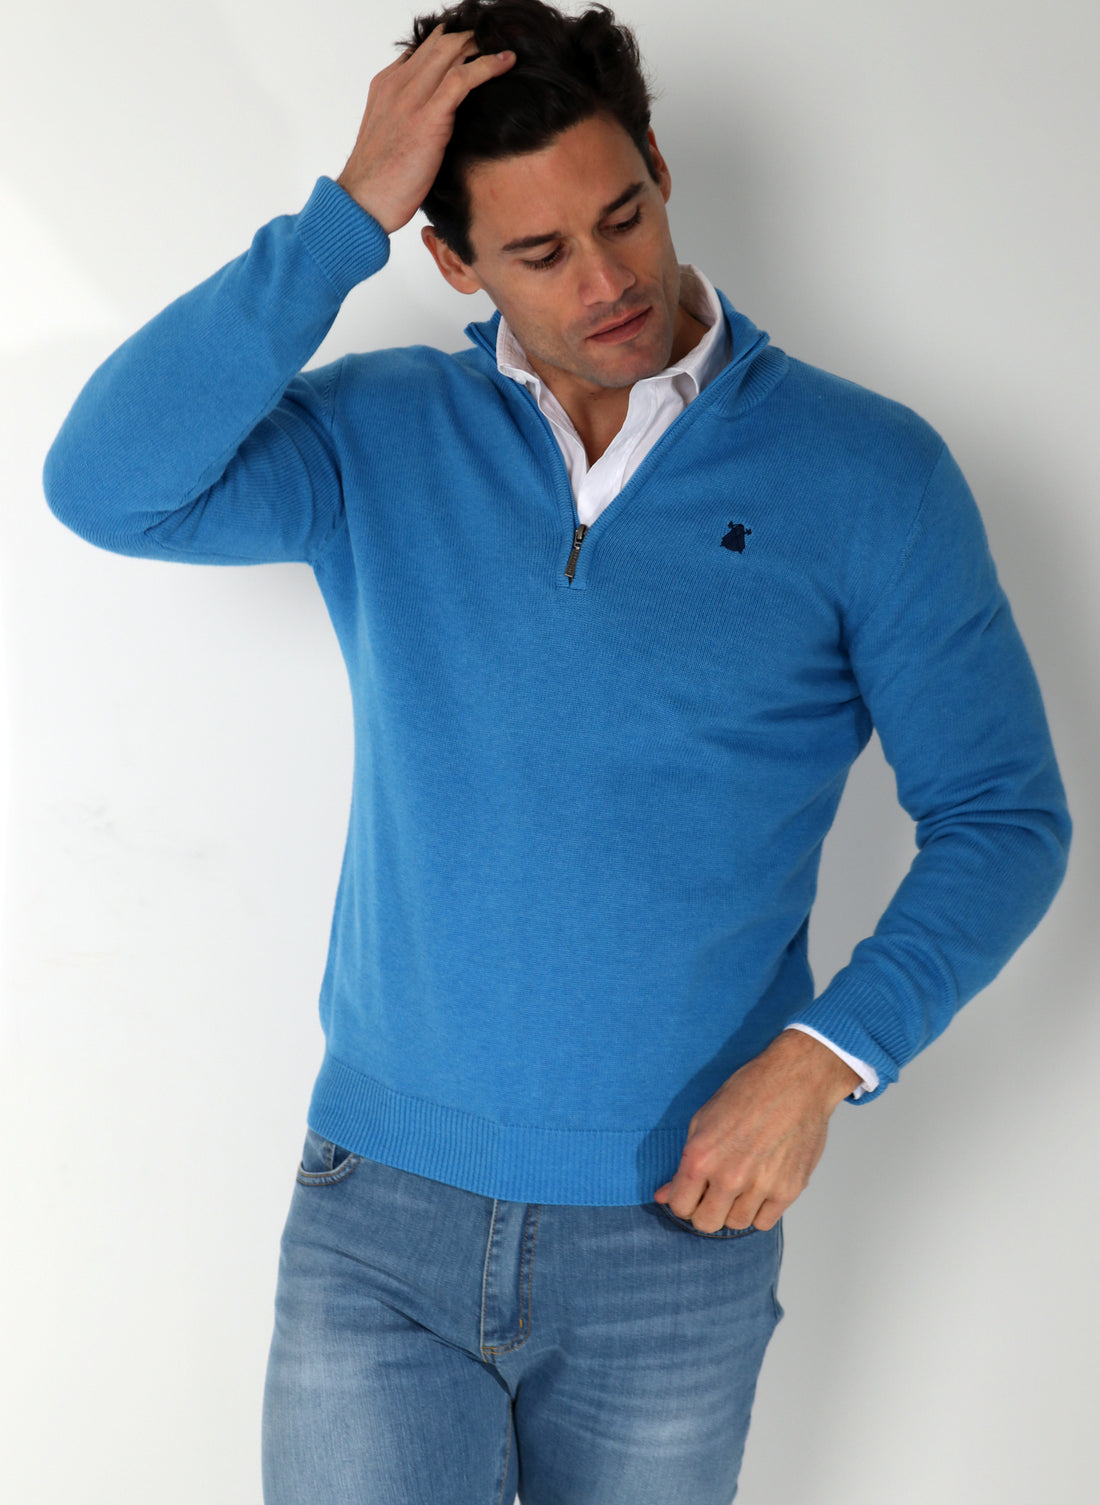 Light Blue Zip Sweater Man